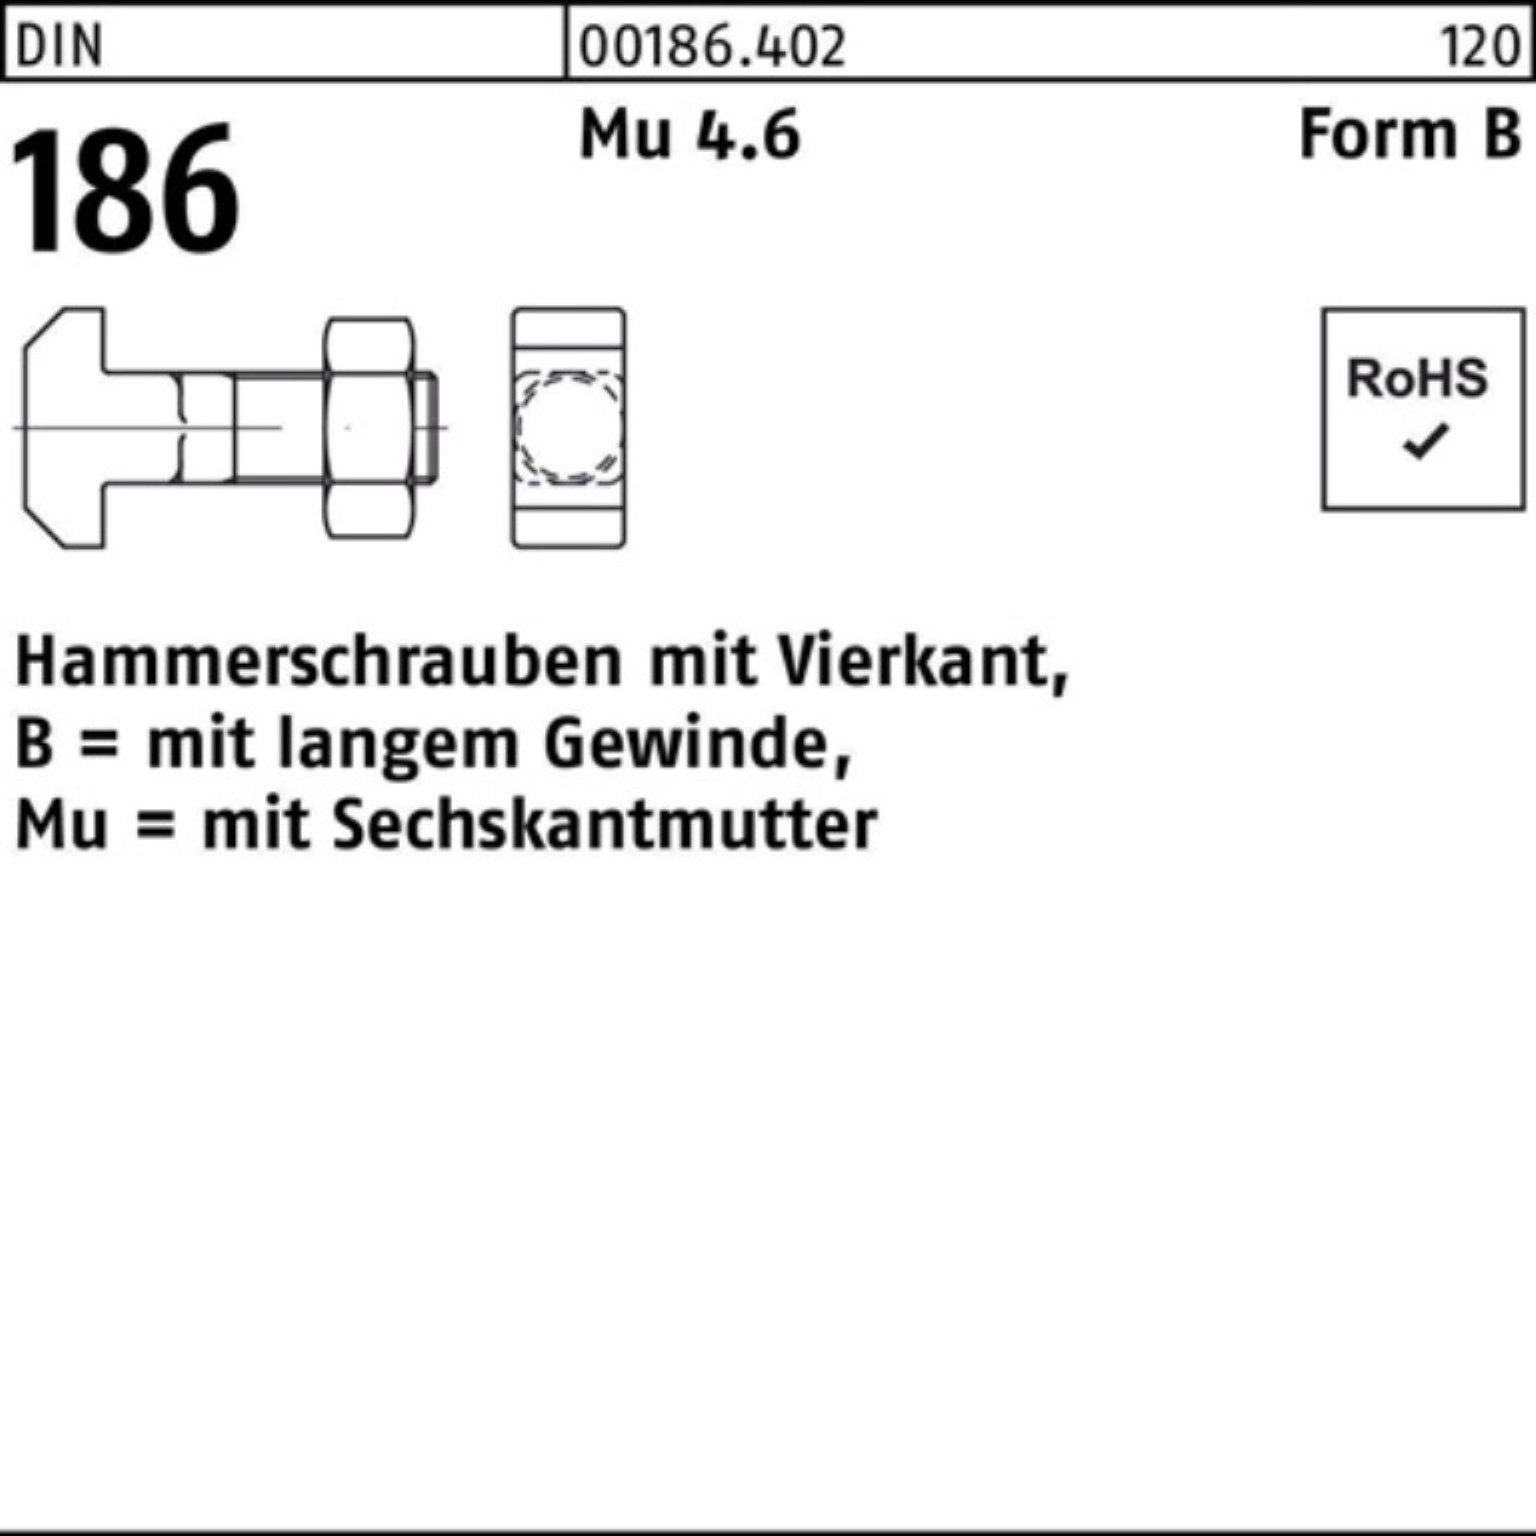 12x FormB DIN Pack 60 Schraube 100er 6-ktmutter Vierkant Reyher BM 186 Hammerschraube